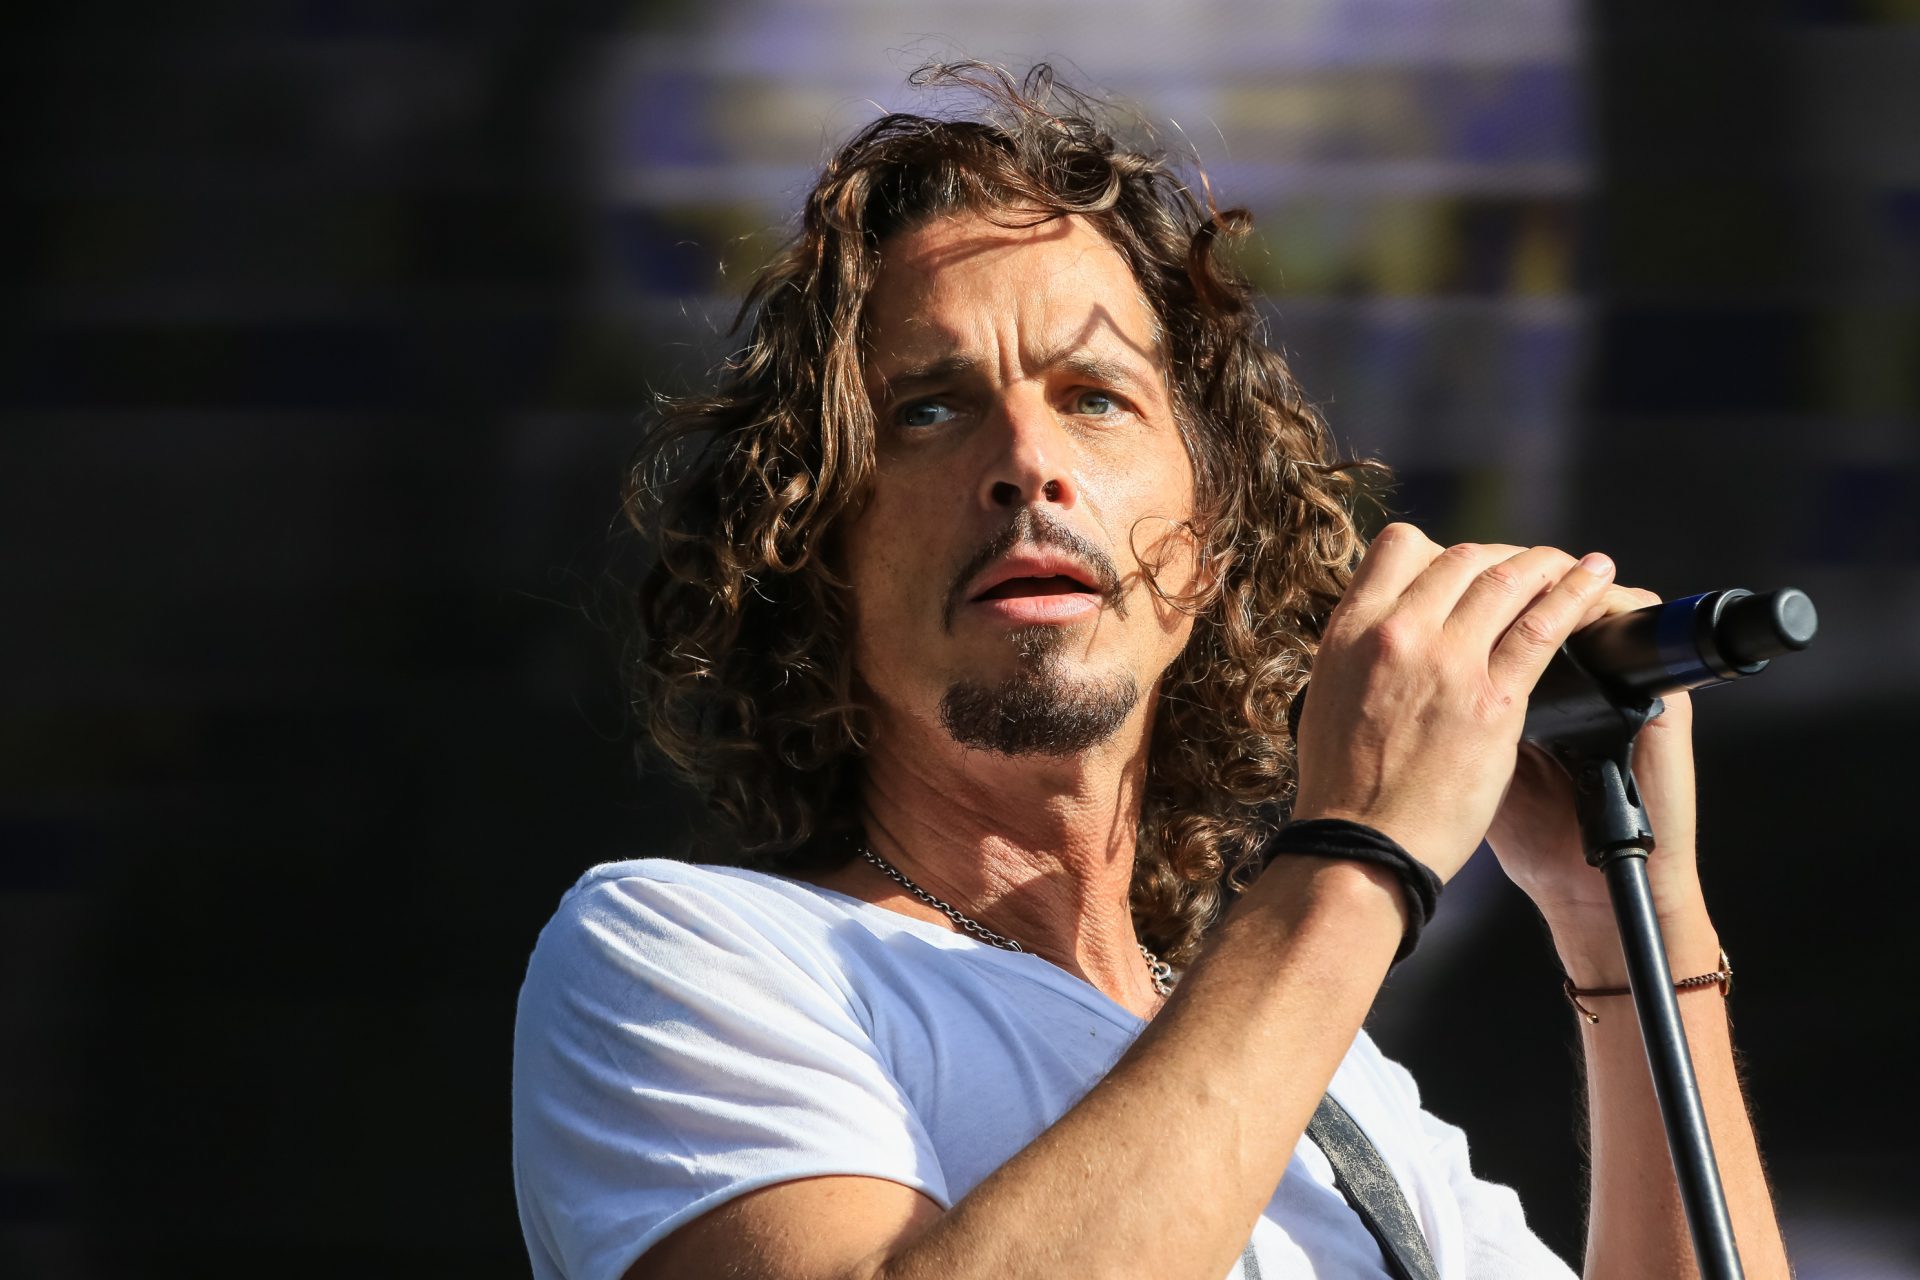 <p>Chris Cornell, cantante di gruppi come Soundgarden e Audioslave, era noto per la sua voce potente e il suo contributo al genere grunge. I suoi testi poetici e l'intensa interpretazione sul palco lo hanno reso una figura iconica del movimento grunge degli anni '90. Il suo epitaffio: “La voce della nostra generazione e un artista di tutti i tempi”</p>